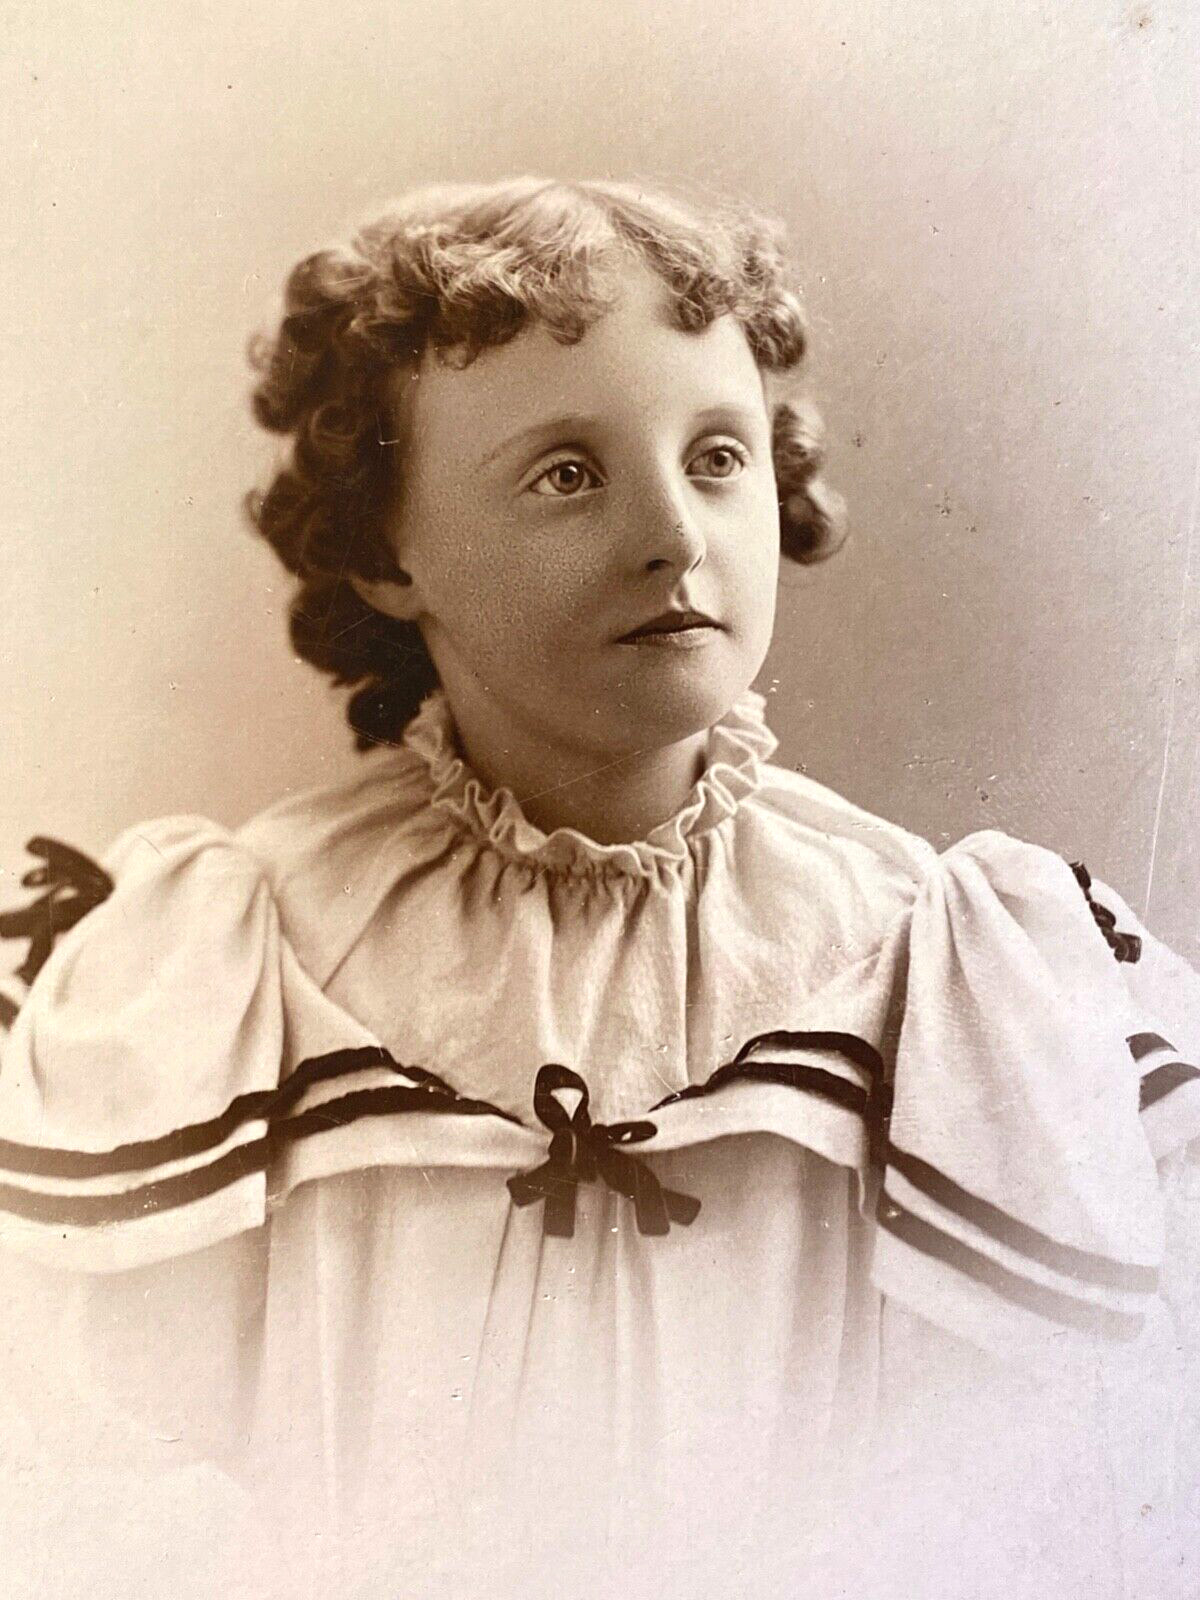 1880s SAN FRANCISCO, CALIFORNIA antique 7x9 cabinet card photograph YOUNG GIRL